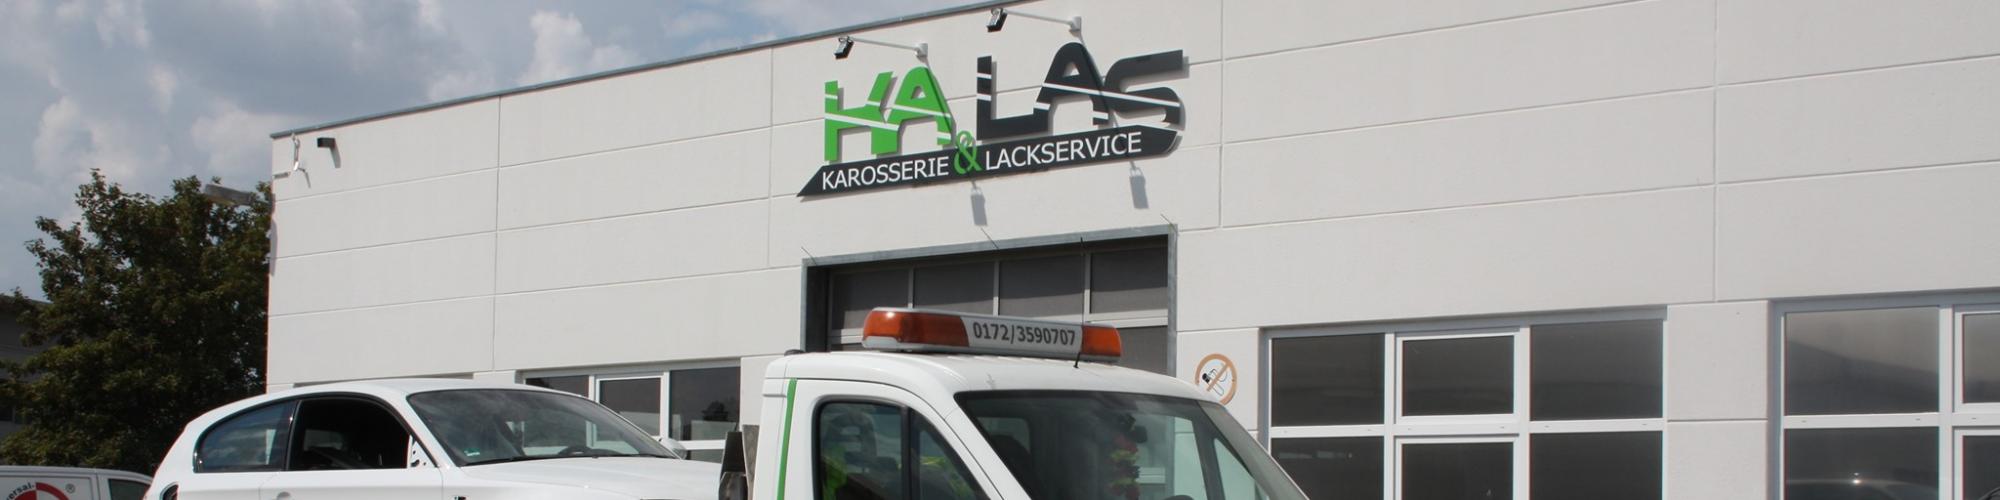 KaLaS - Karosserie- und Lackierservice GmbH & Co. KG